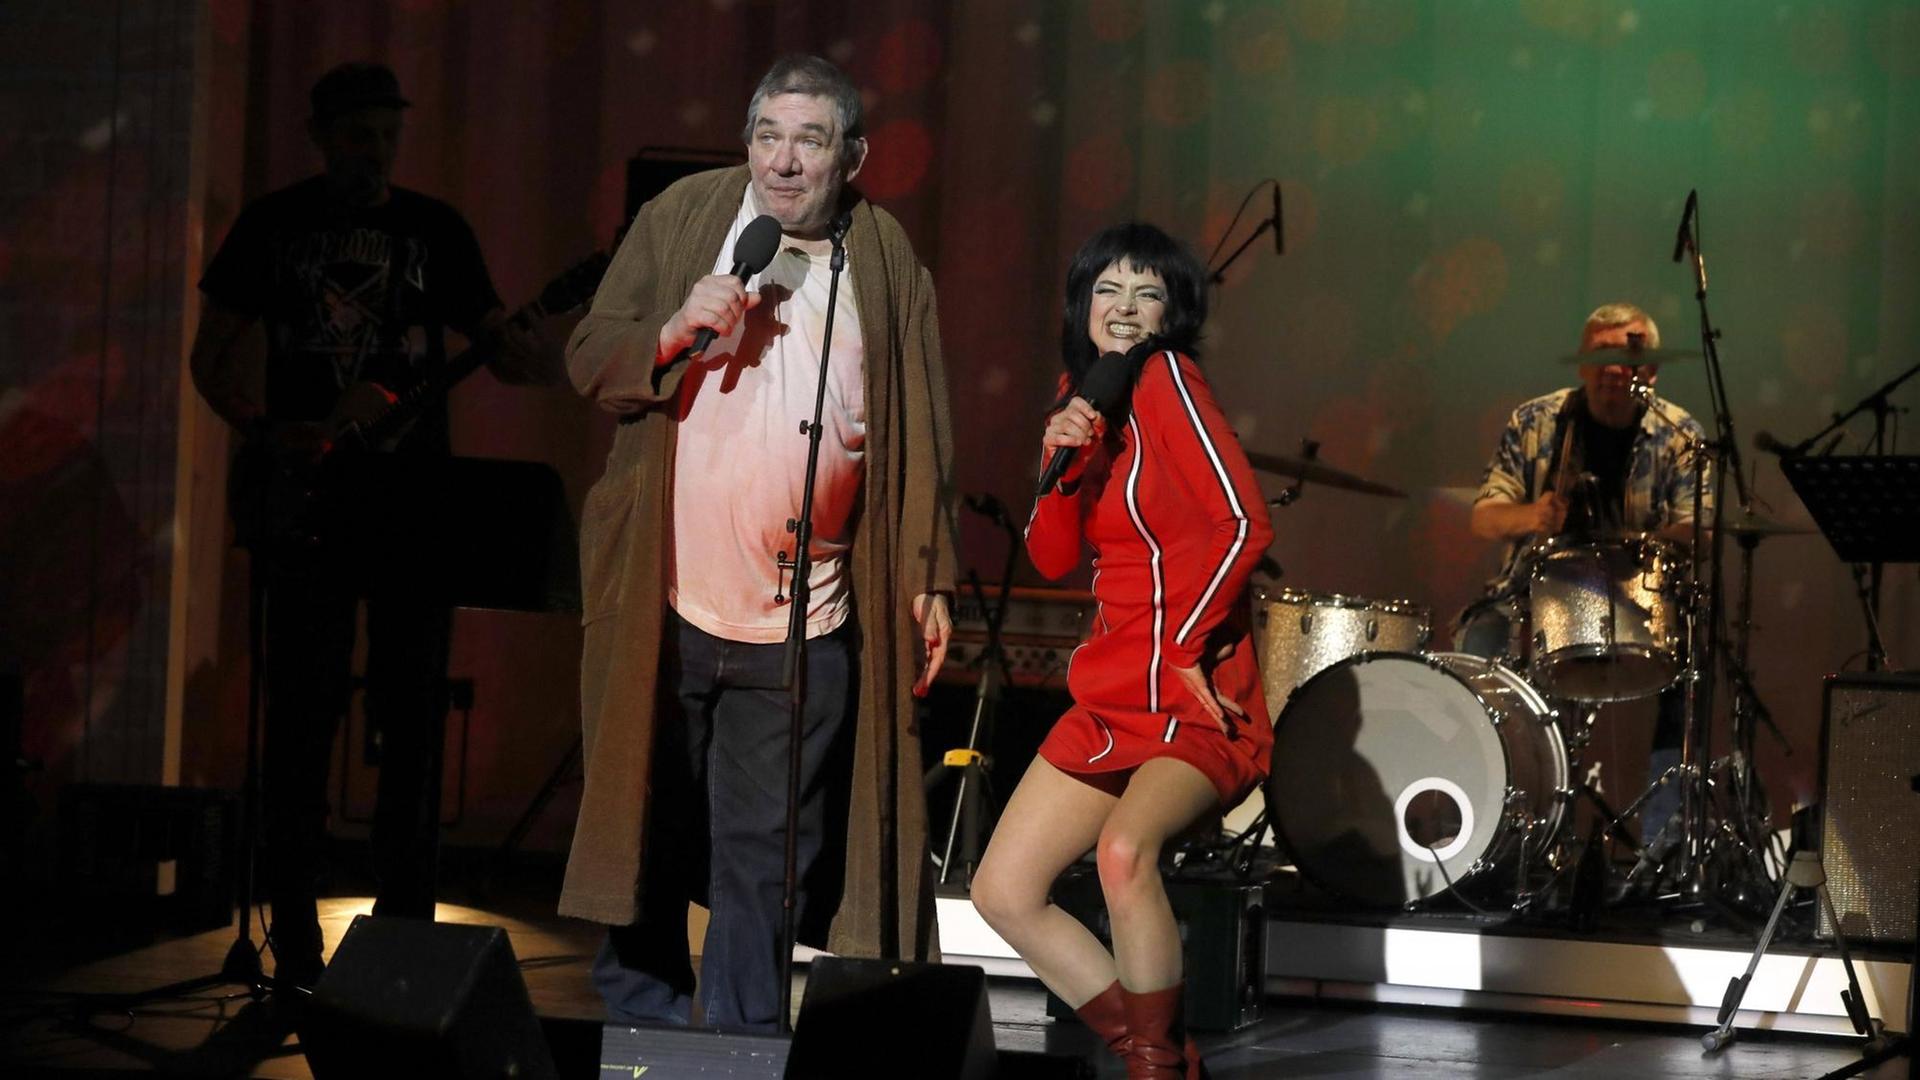 Ein Mann steht auf einer Bühne, er trägt einen Bademantel und hält ein Mikrofon in der Hand. Neben ihm steht eine Frau in einem roten Kleid.